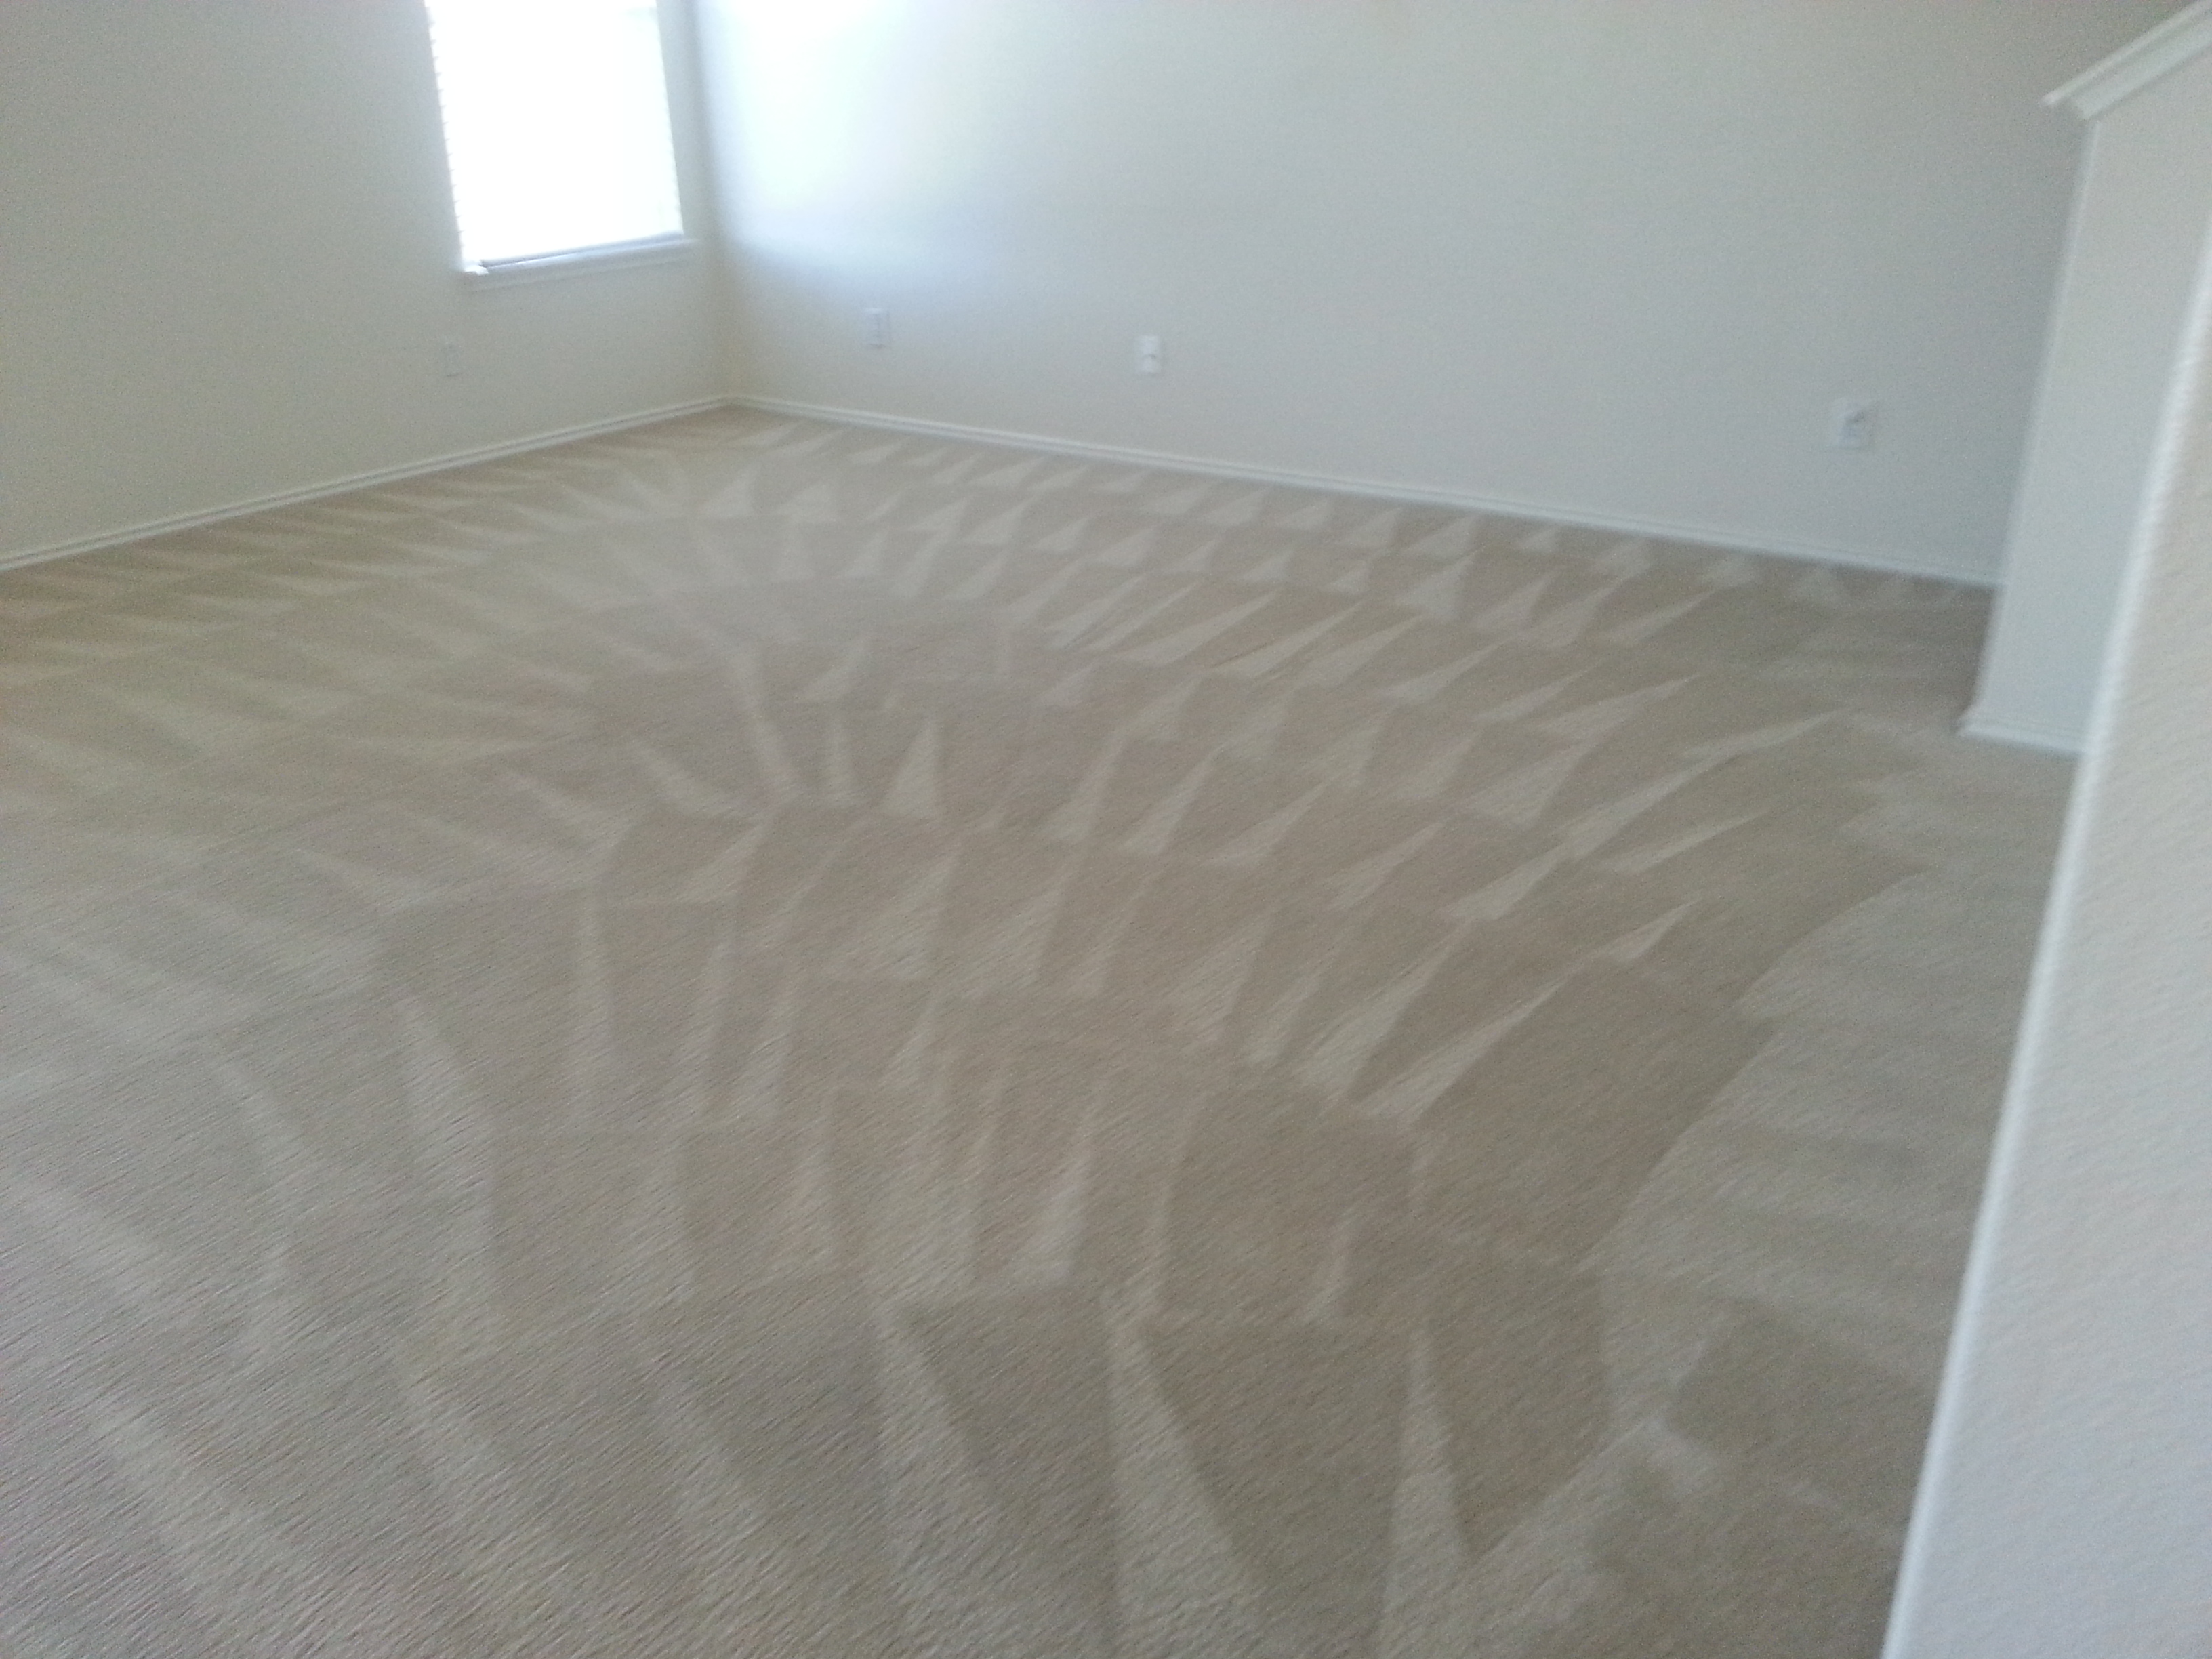 Clean Carpet Room Carpet Cleaning San Antonio